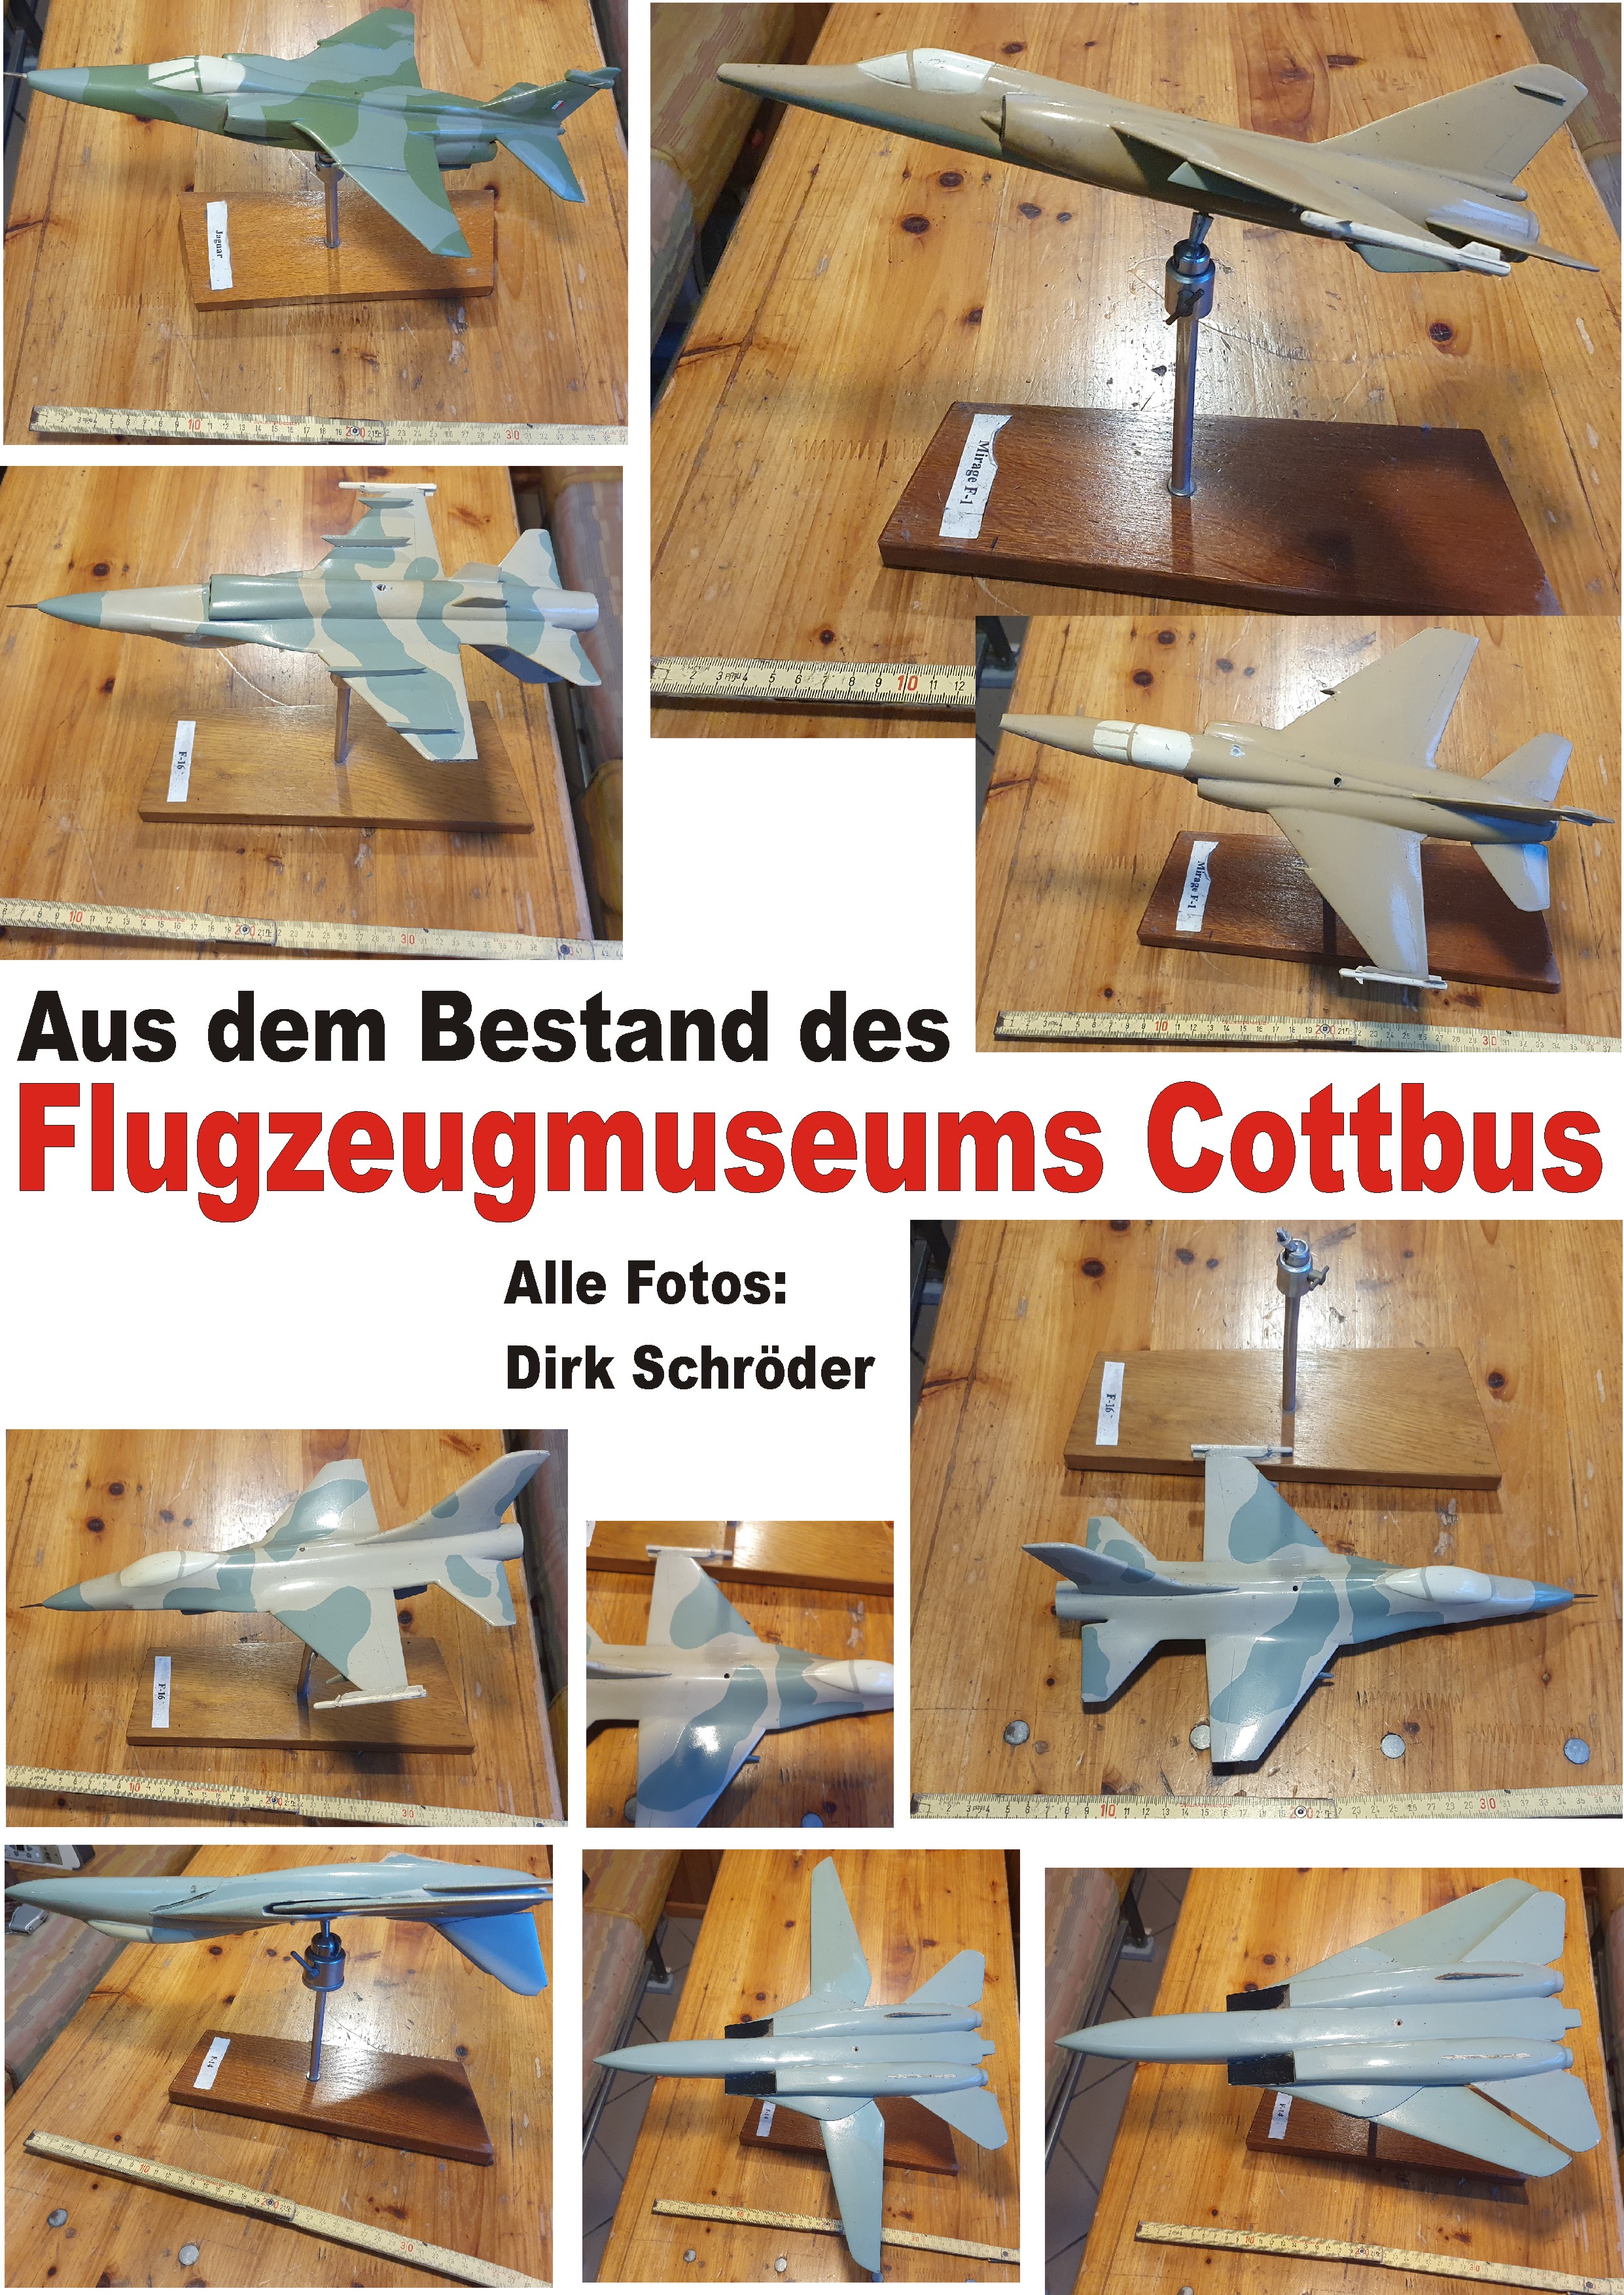 Modelle im Museum Cottbus I.JPG